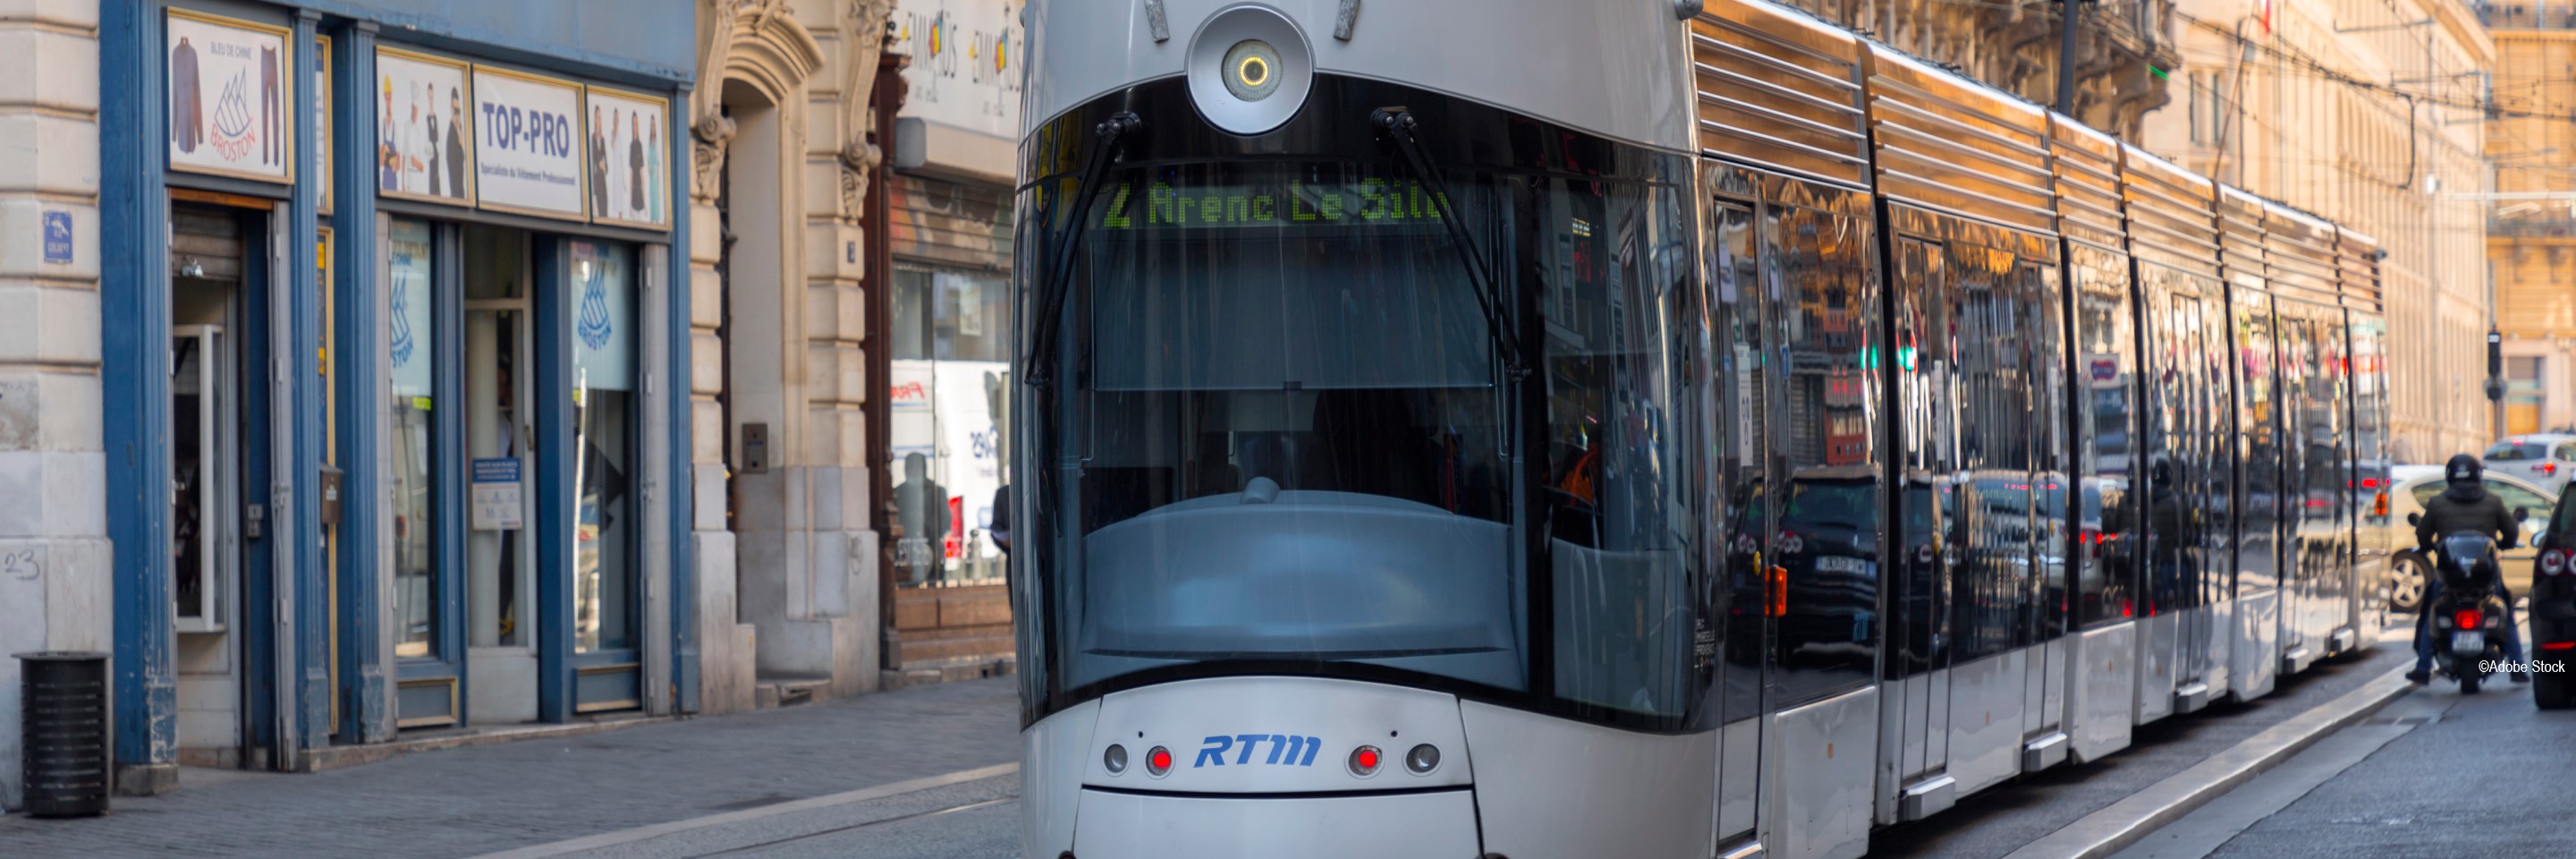 Tram_T3_Marseille